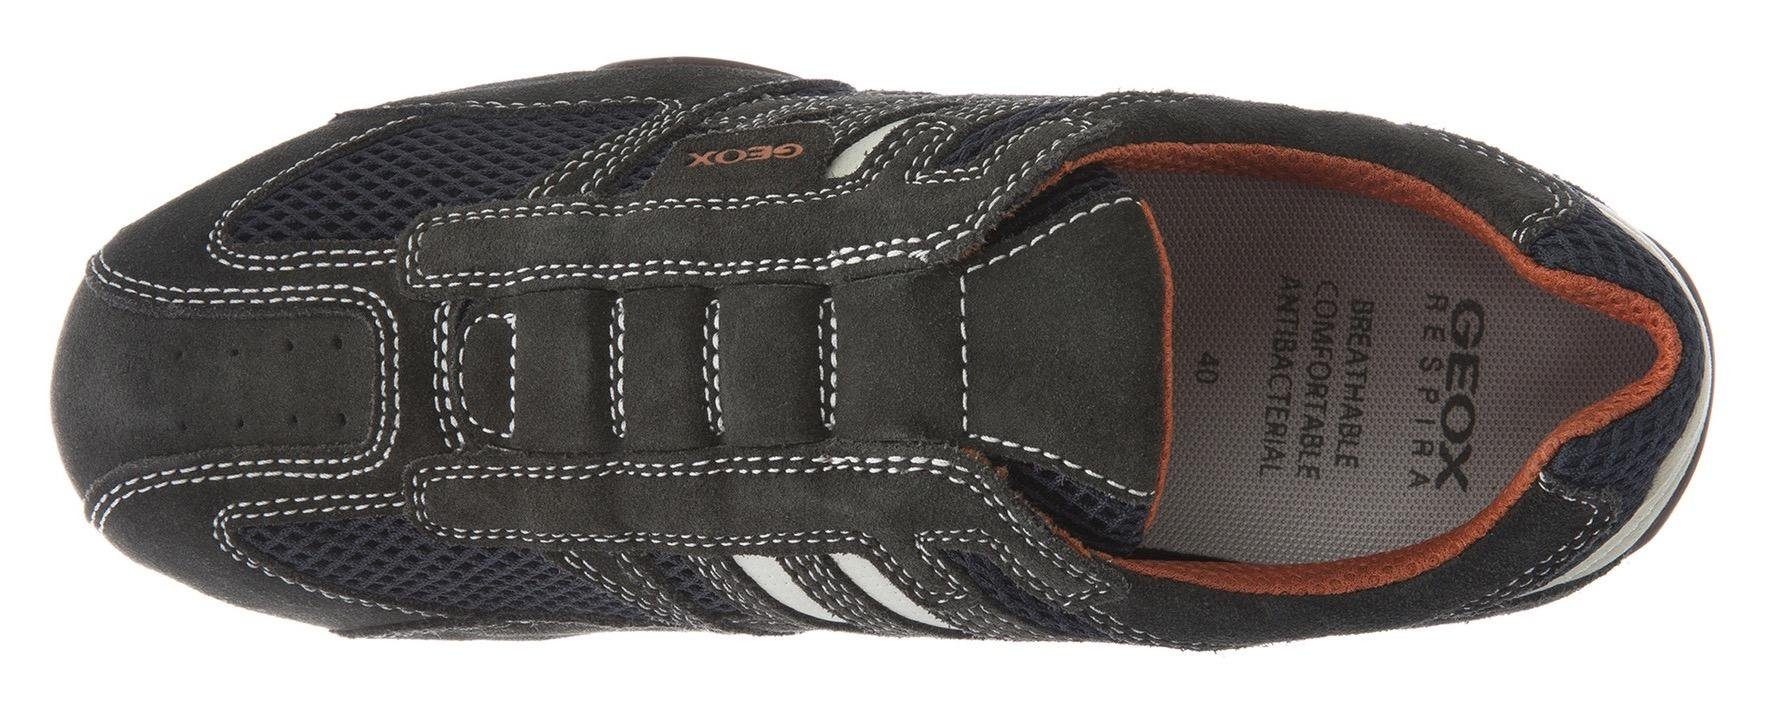 Geox UOMO dunkelgrau-beige Membrane Slip-On mit SNAKE mit Spezial Ziernähten und modischen Geox Sneaker